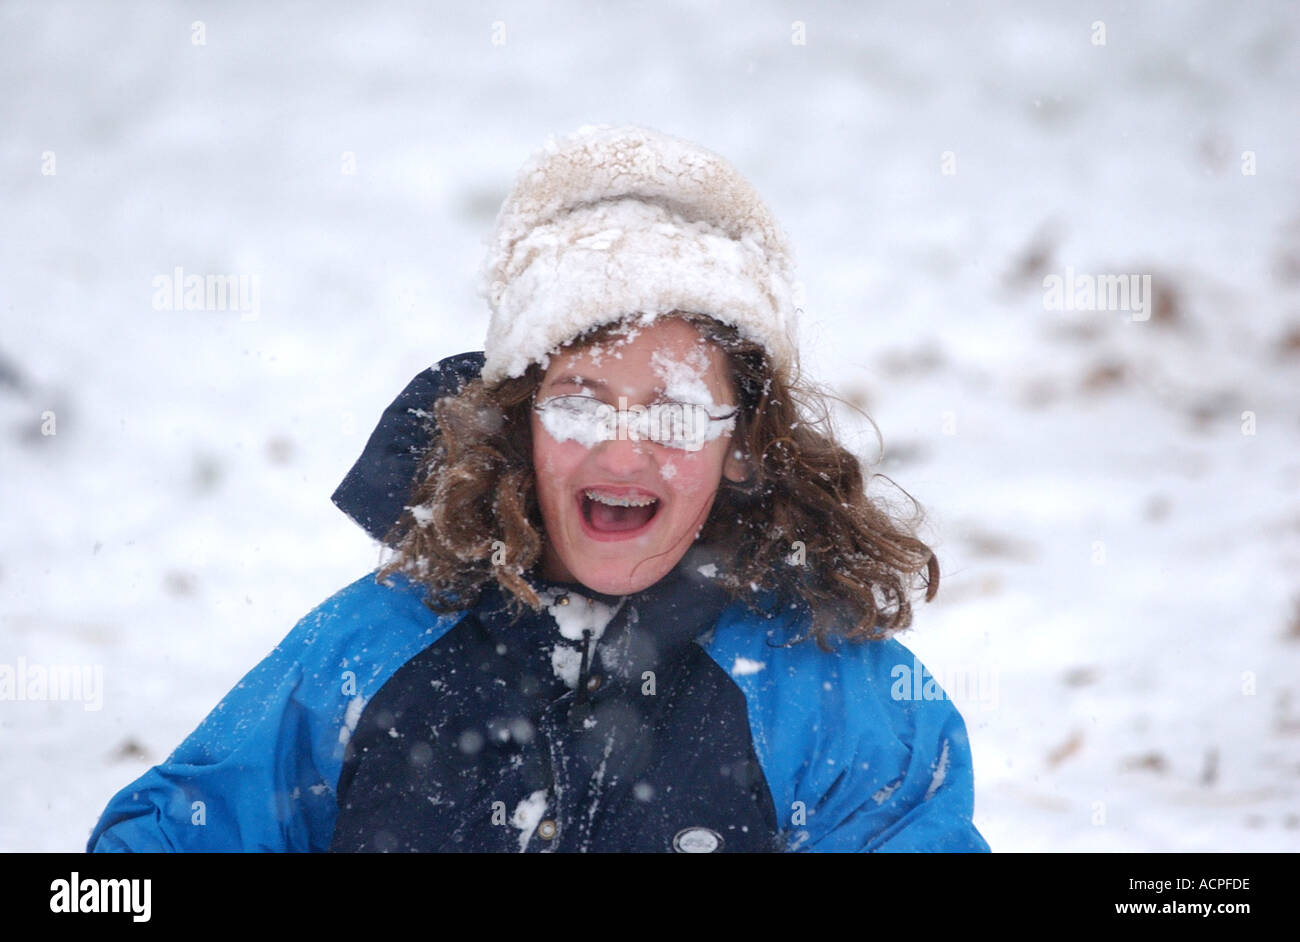 Lustiges Kind Bild Mädchen mit Gesicht bedeckt im Schnee, nachdem er von Schneeball getroffen Stockfoto